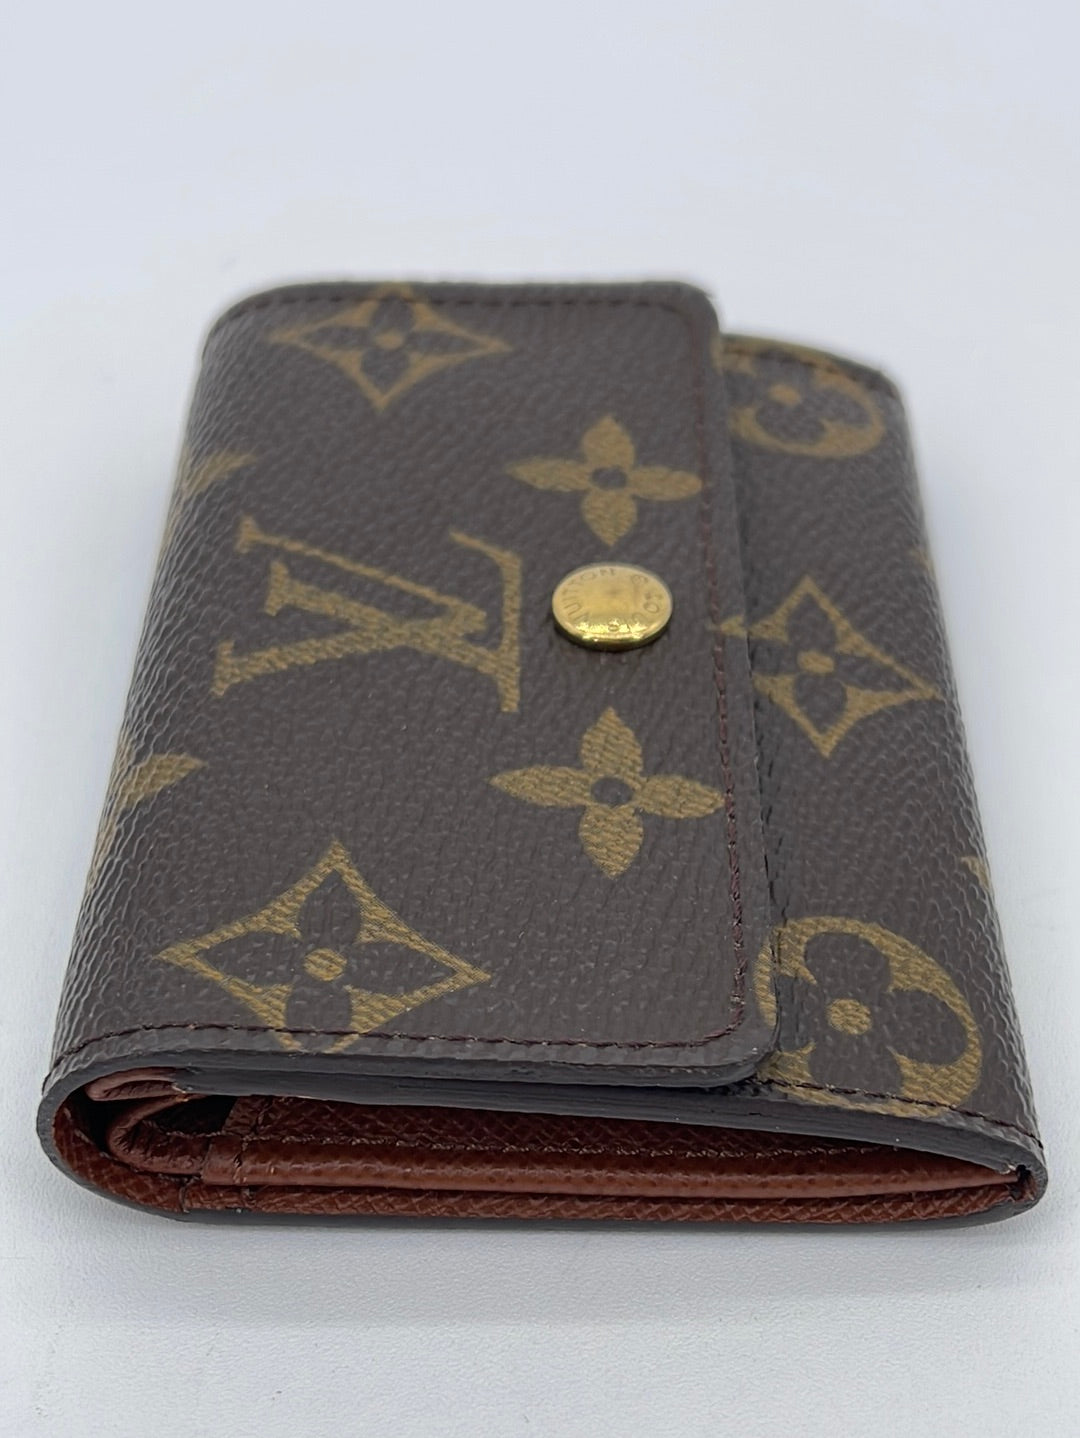 Preloved Louis Vuitton Monogram Card Wallet MI0015 040223 – KimmieBBags LLC